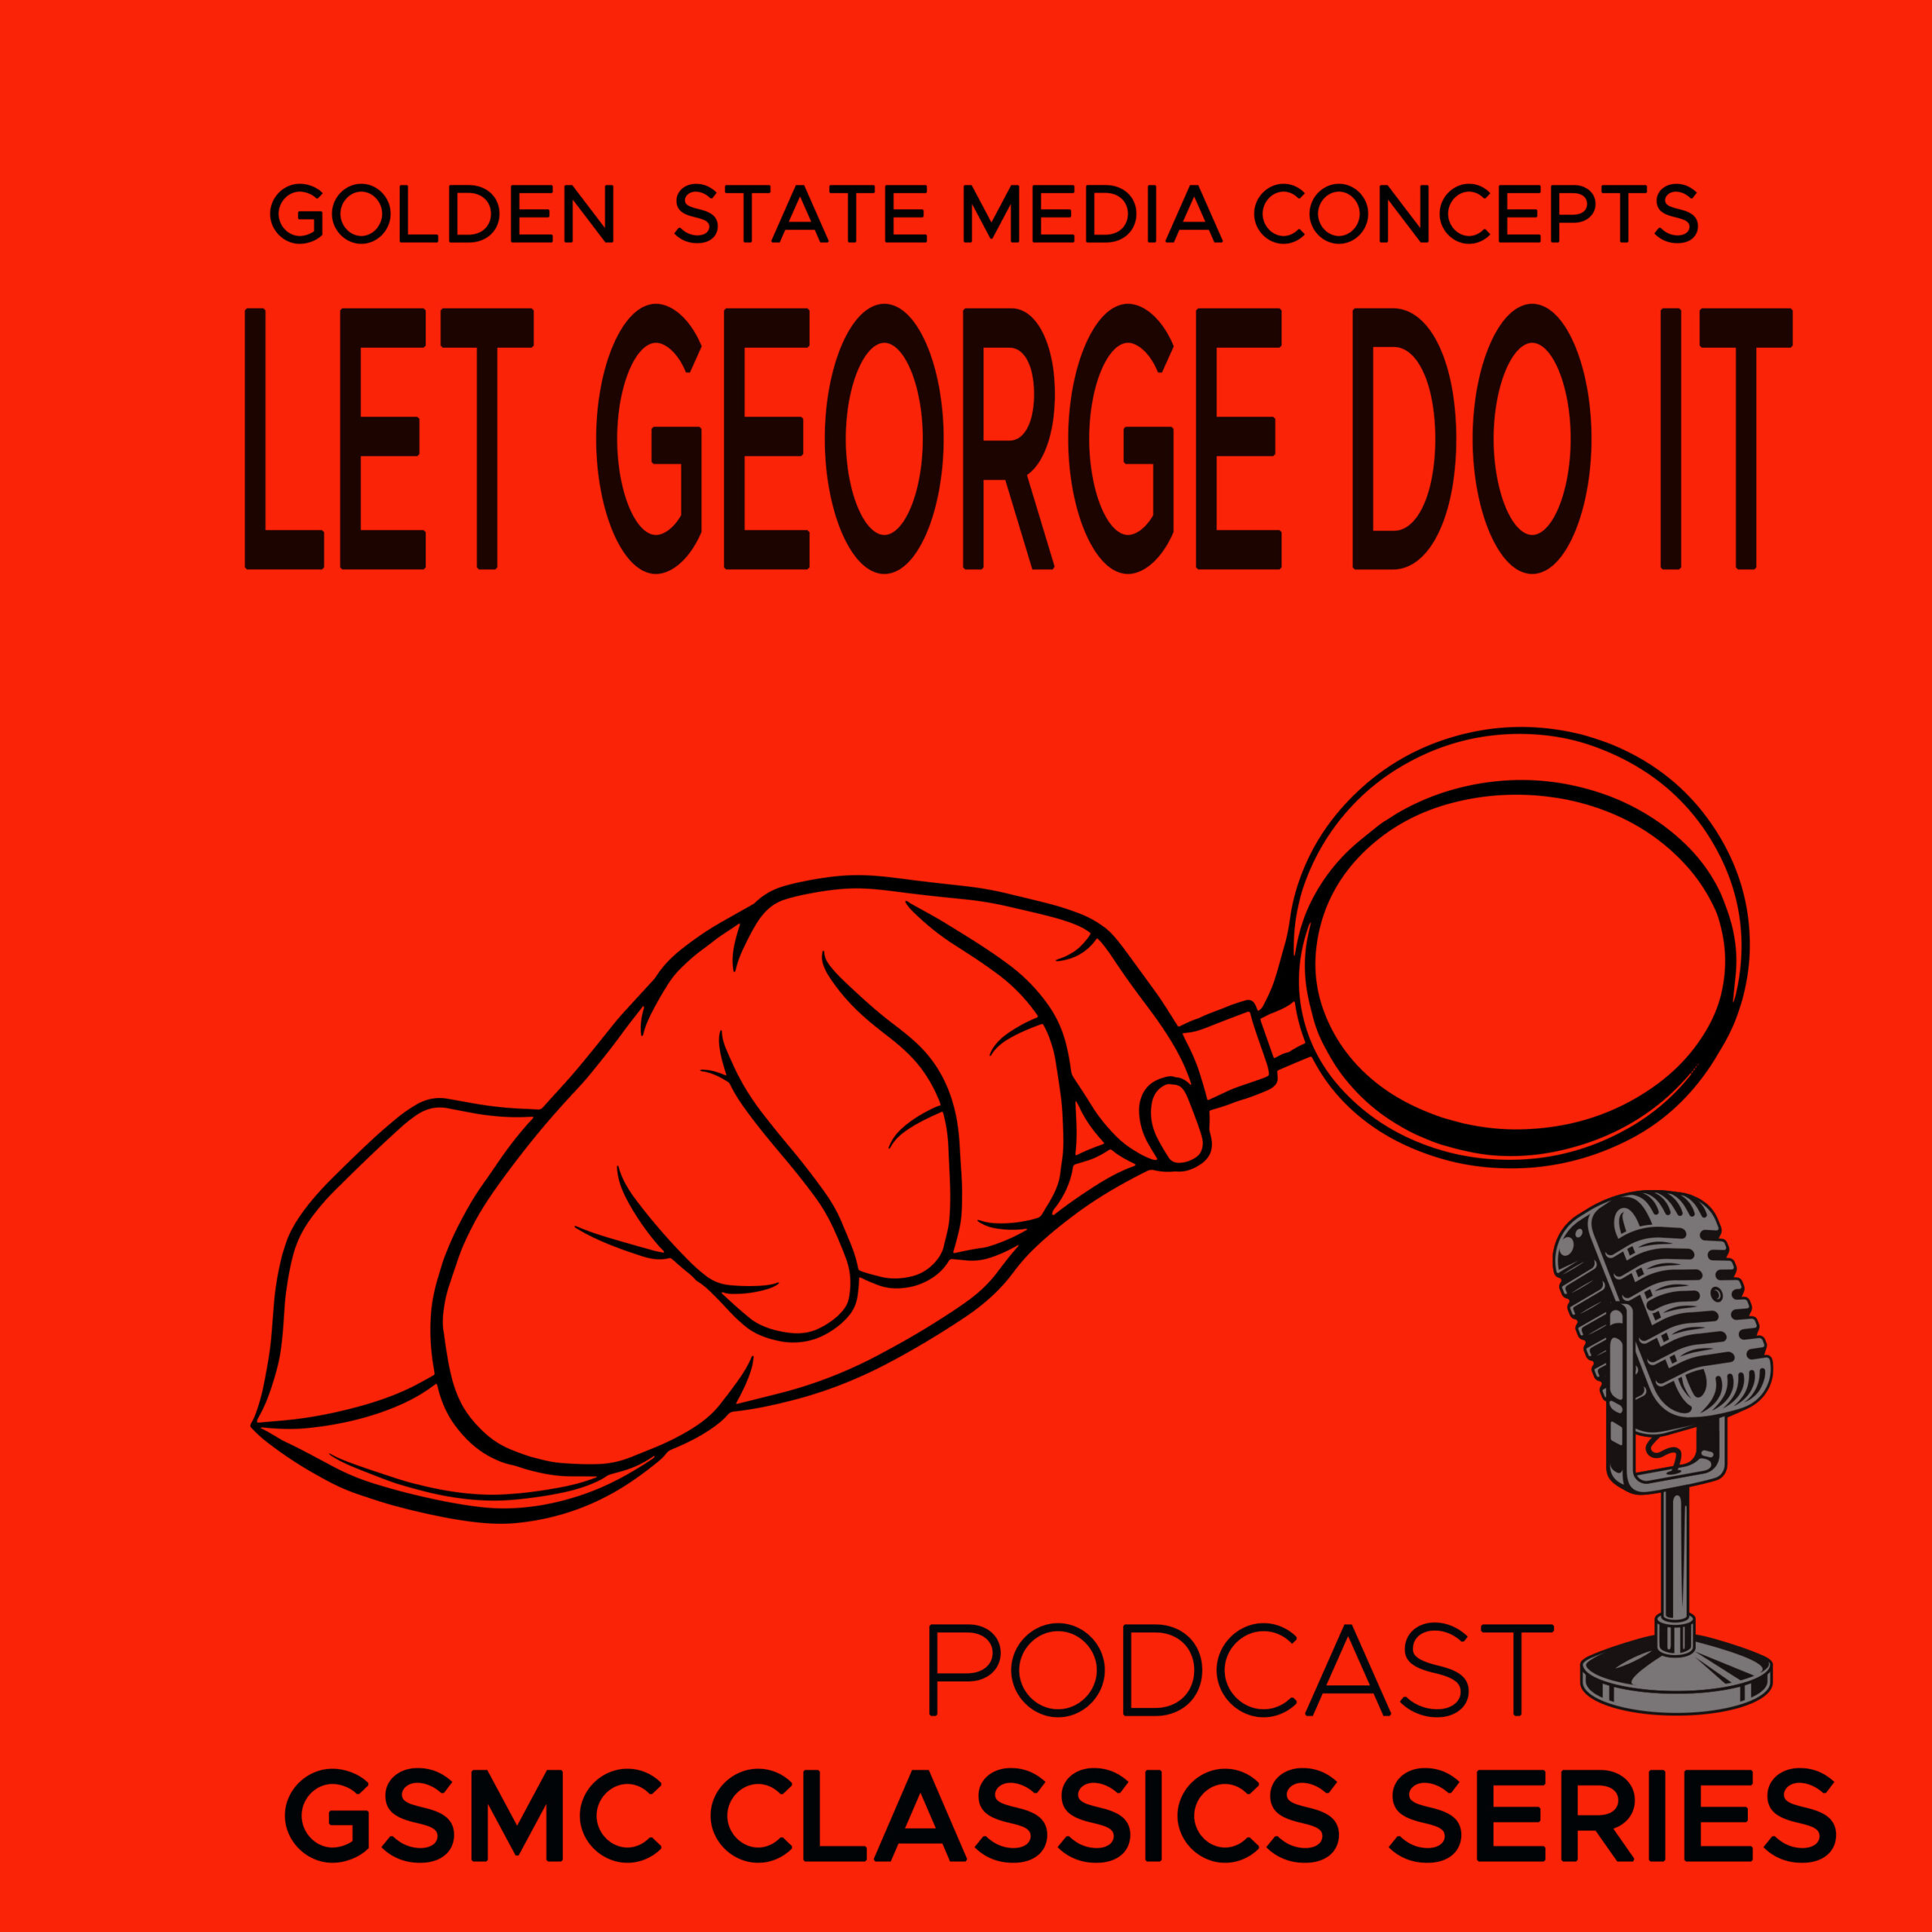 GSMC Classics: Let George Do It